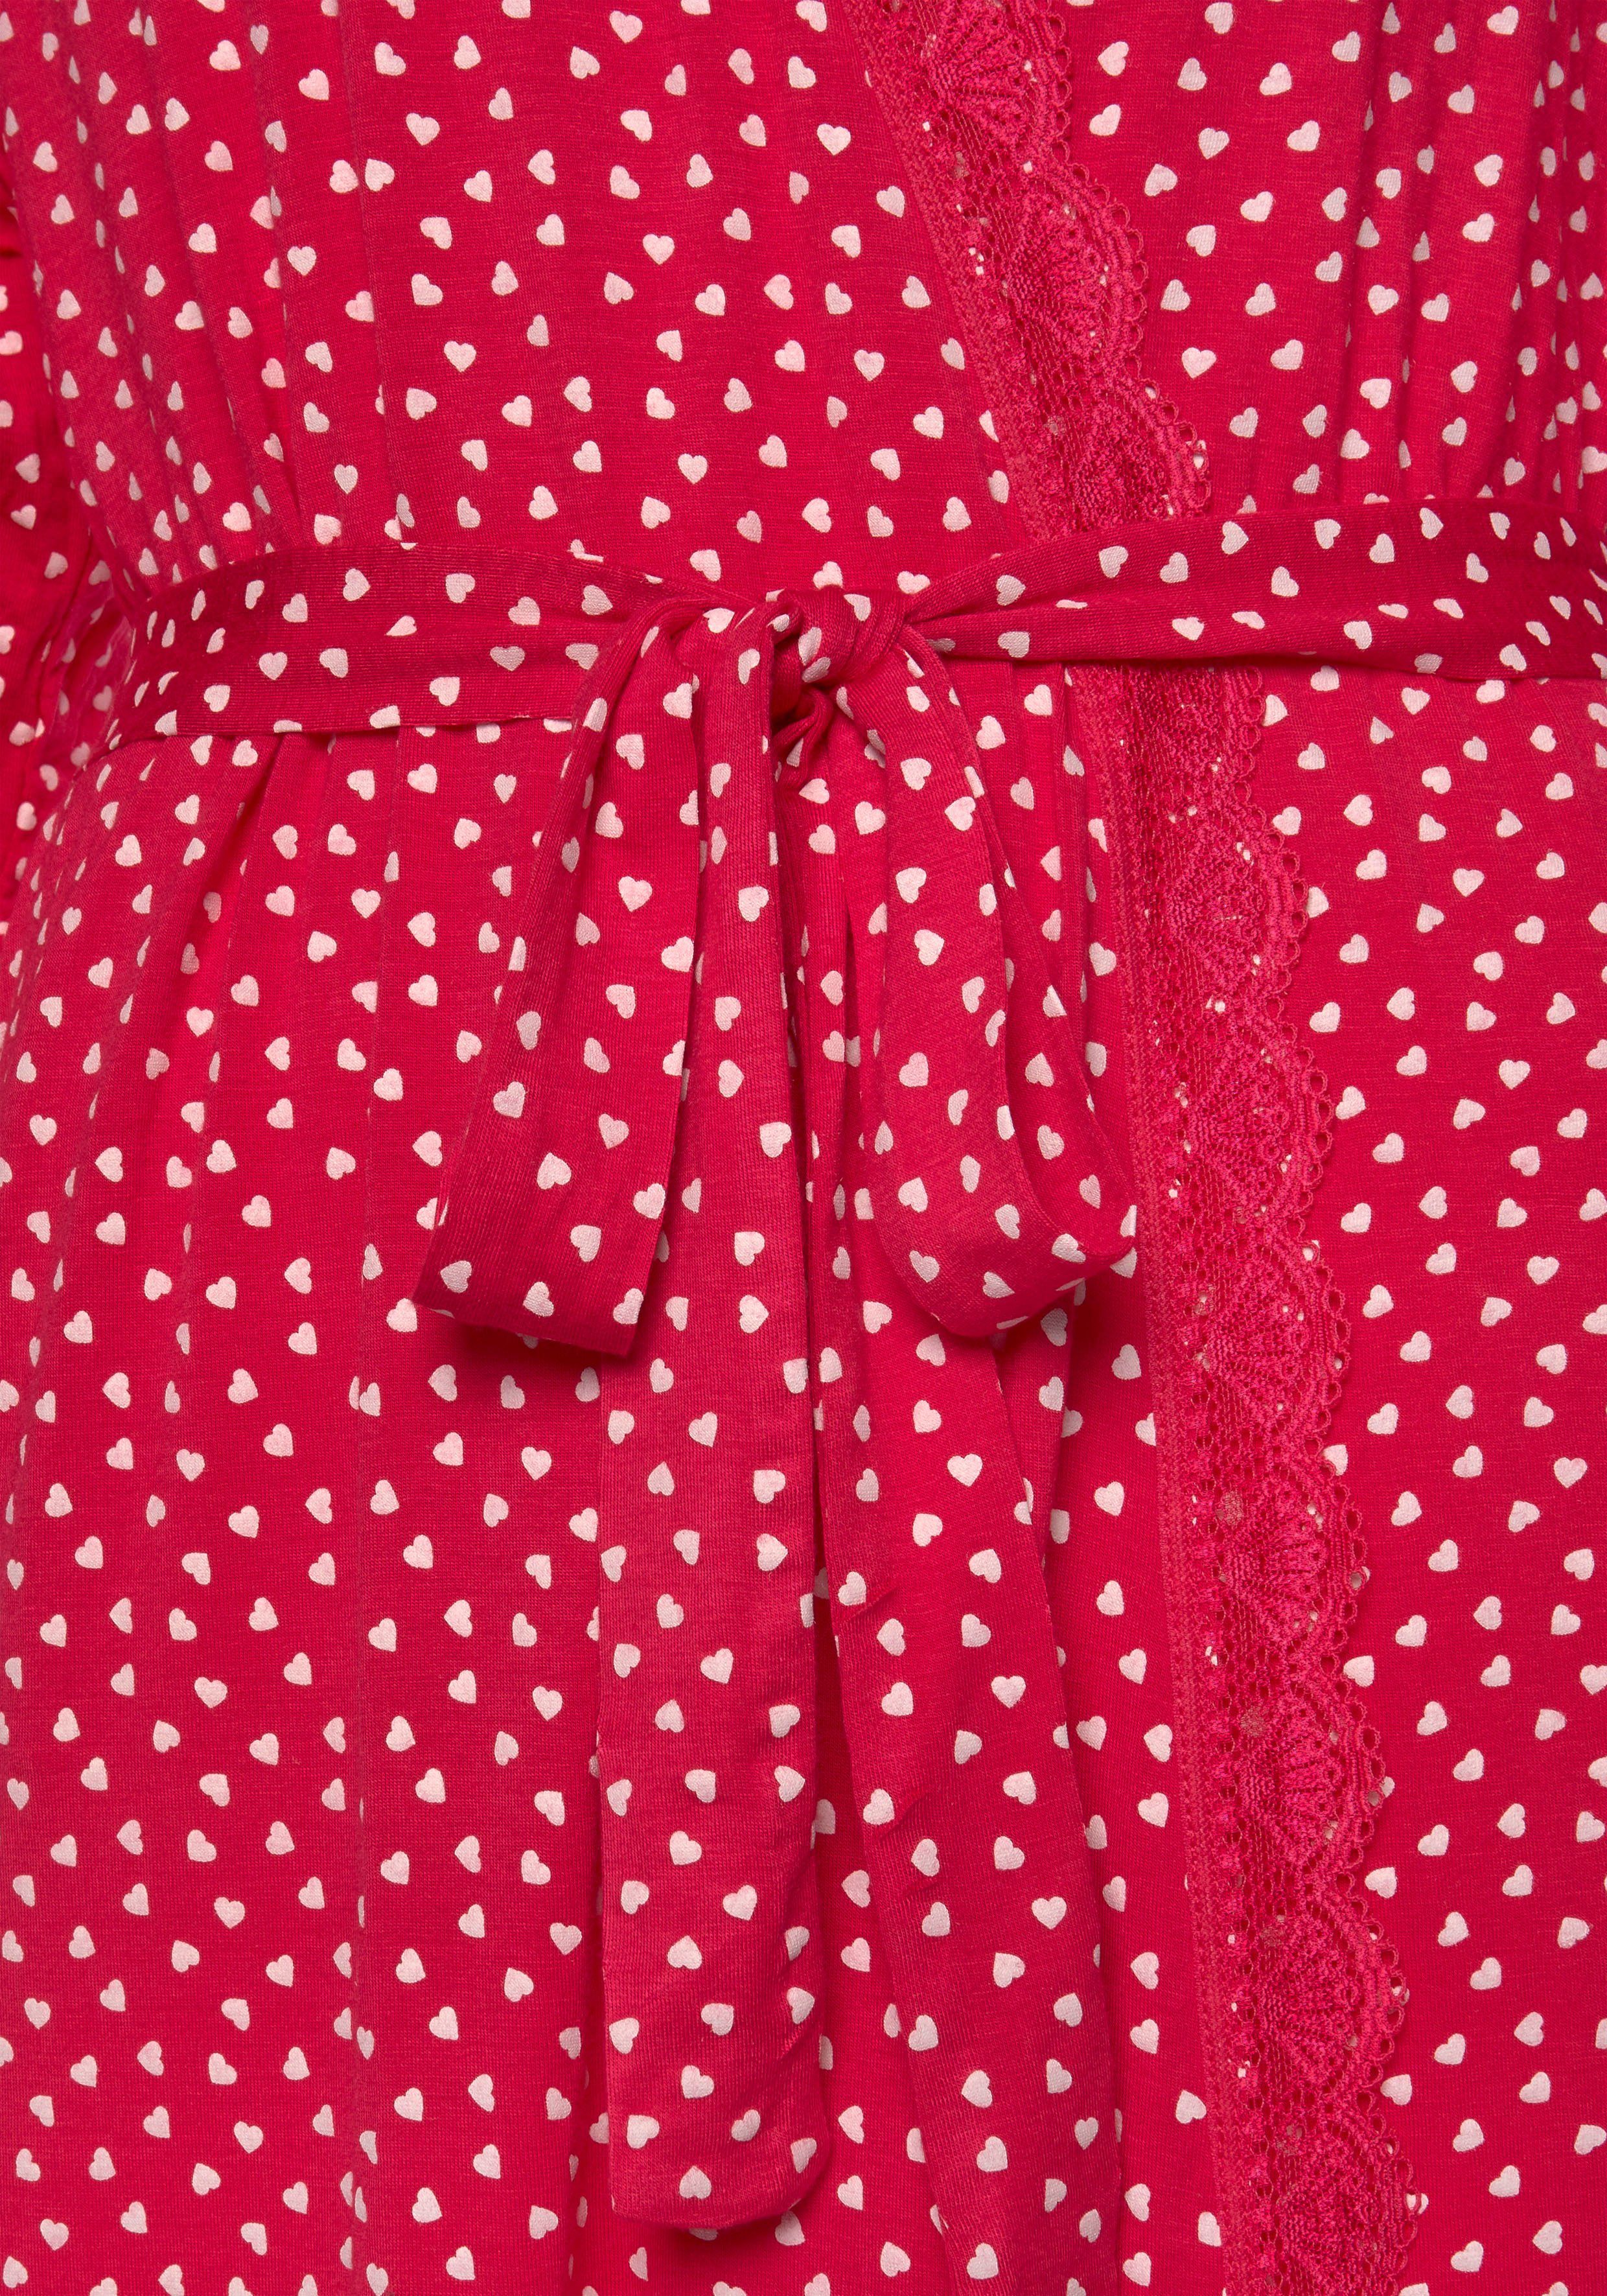 Kimono, Gürtel, pink-gemustert Spitze s.Oliver Kurzform, und mit Herzchendruck Single-Jersey,